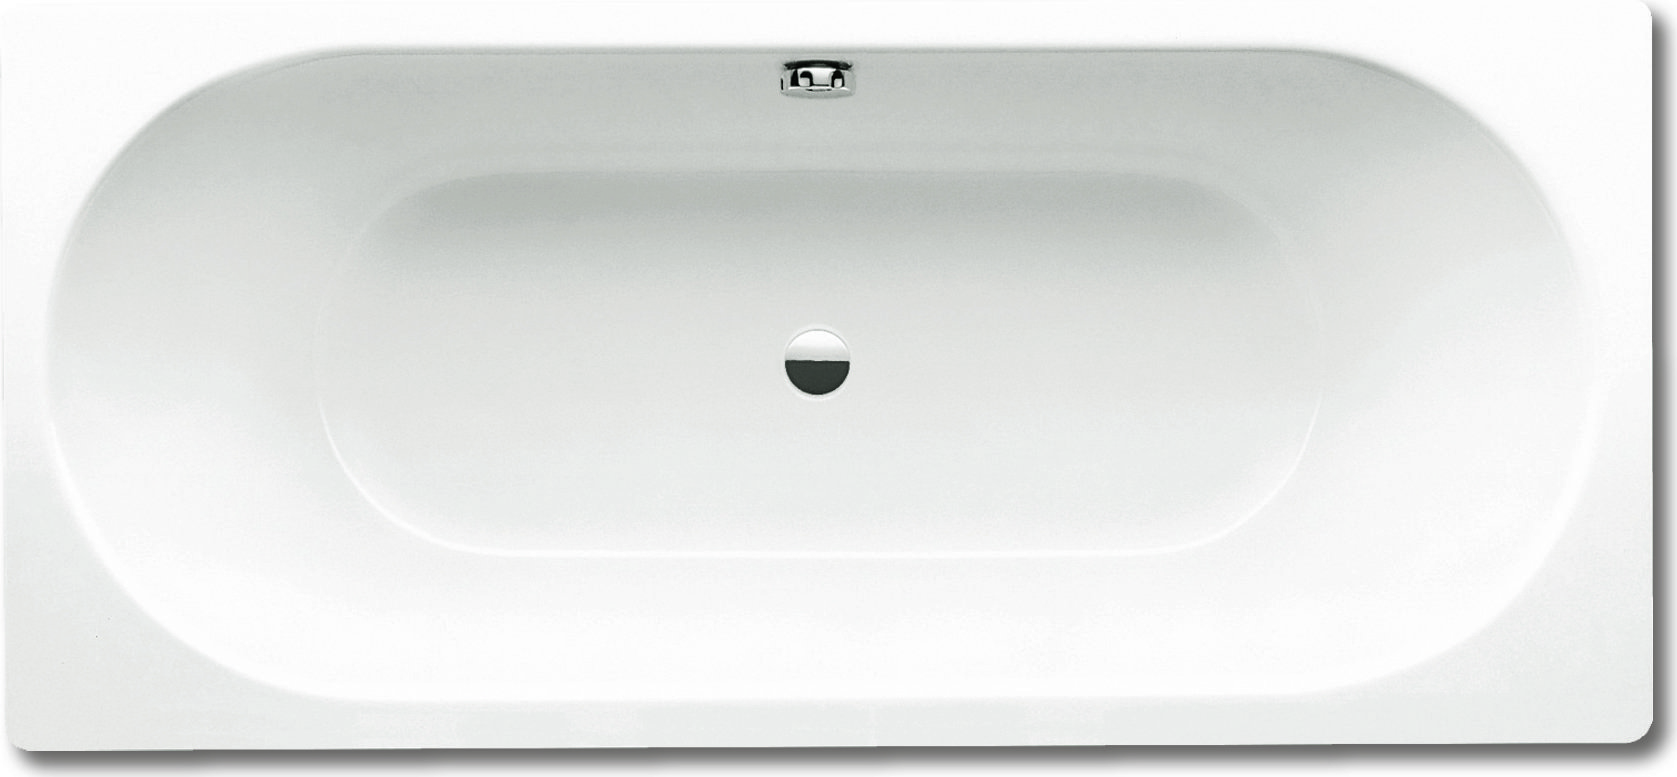 Стальная ванна Kaldewei Classic Duo 110 180x80, белый, сталь  - купить со скидкой